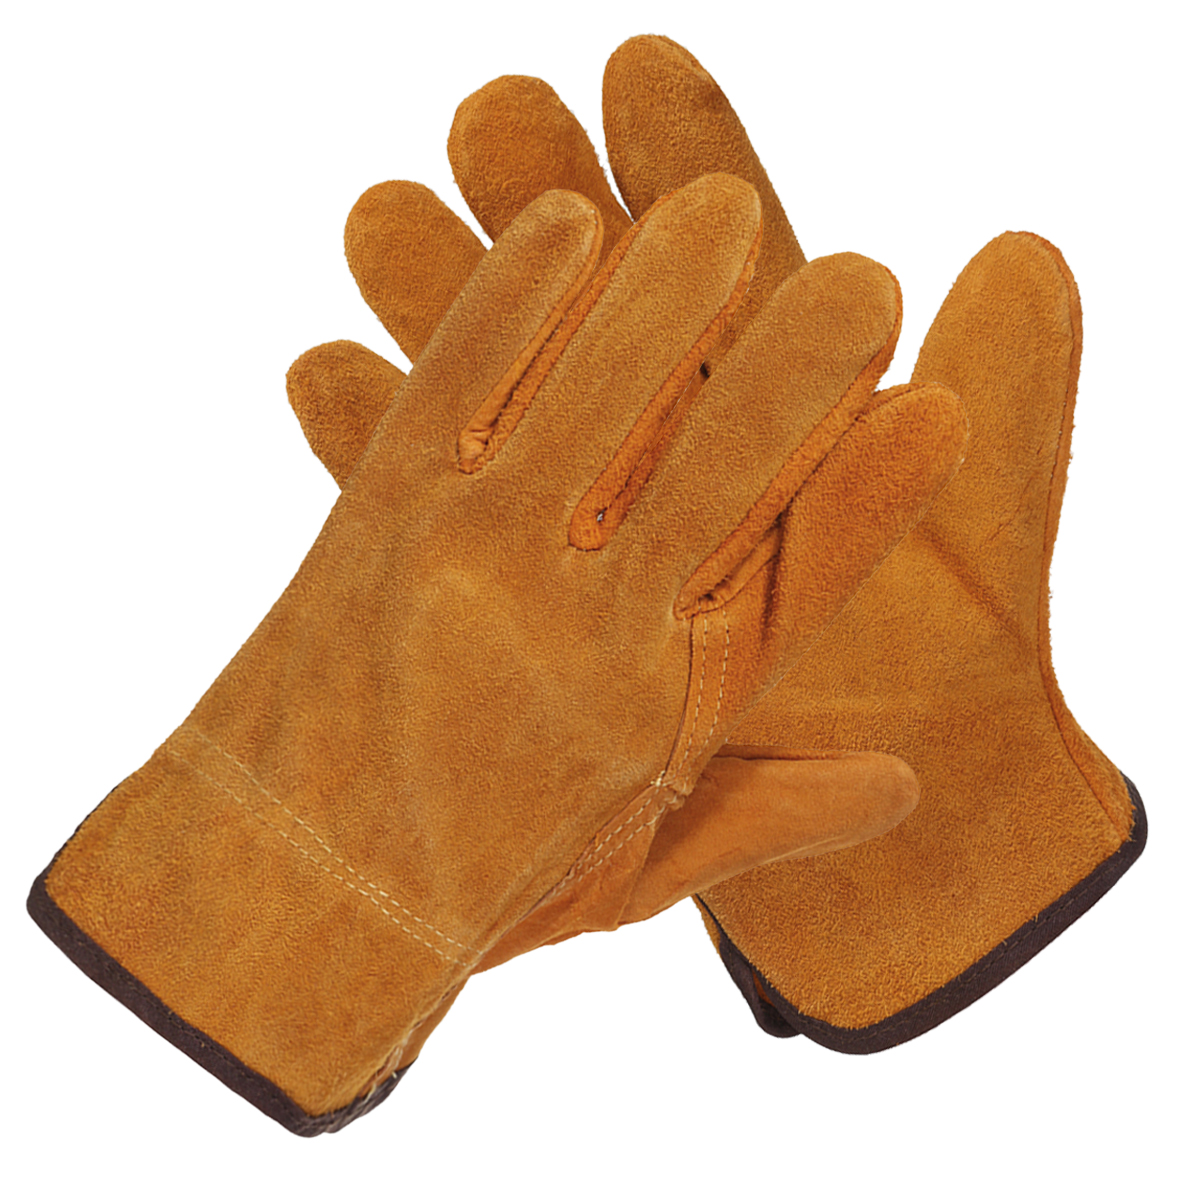 Garden-Gardening-Welder-Gloves-Men-Women-Thorn-Proof-Leather-Work-Gloves-Yellow-1630104-5